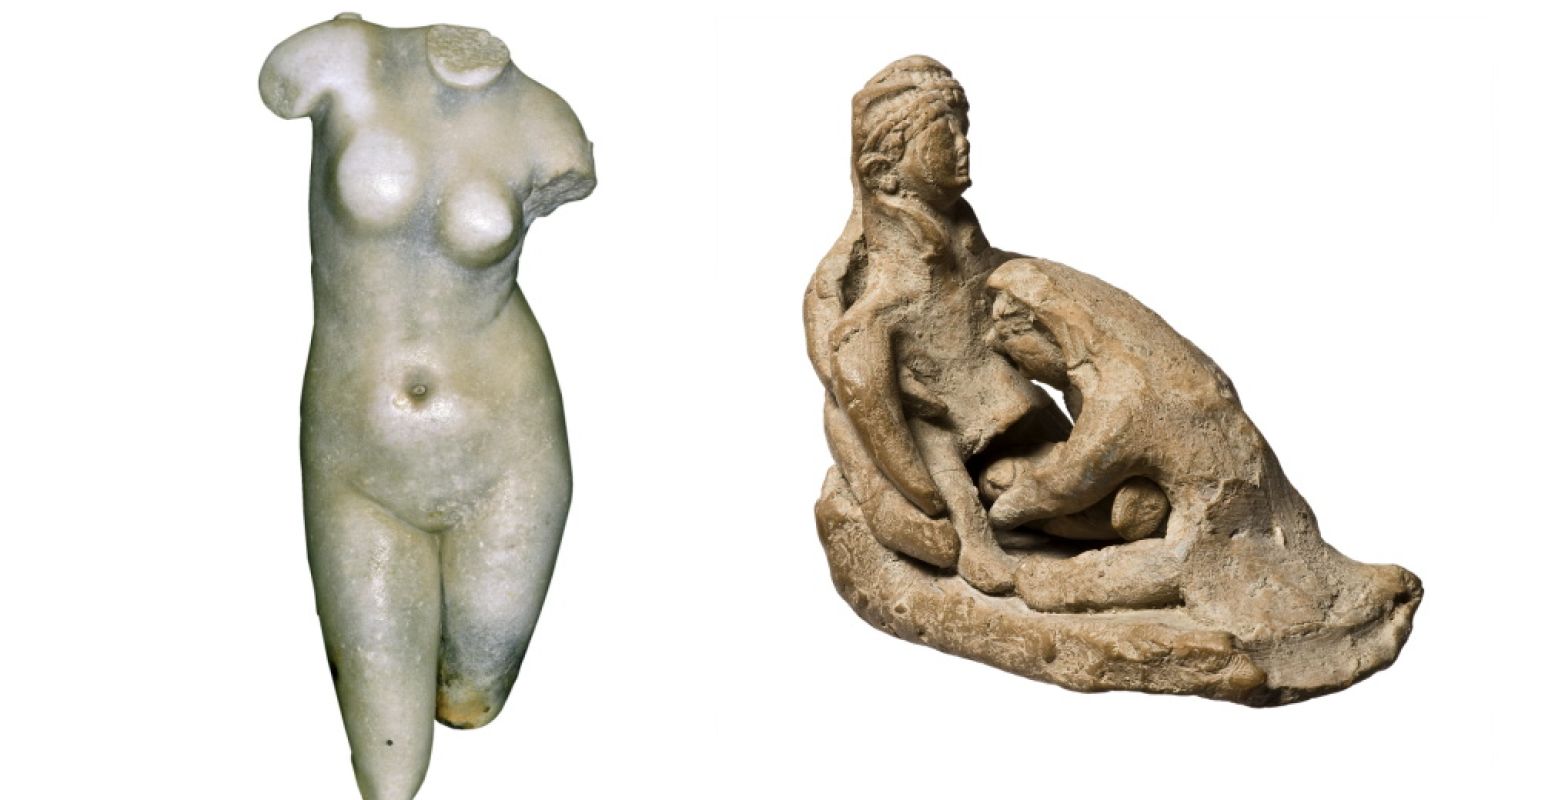 Links: Aphrodite, marmer, Hellenistisch, 2de-1e eeuw voor Chr., uit Paphos. Foto: © Paphos Museum. Rechts: Barende vrouw, terracotta, 6de eeuw v. Chr., uit Lapithos. Foto: © Cyprus Museum, Nicosia.